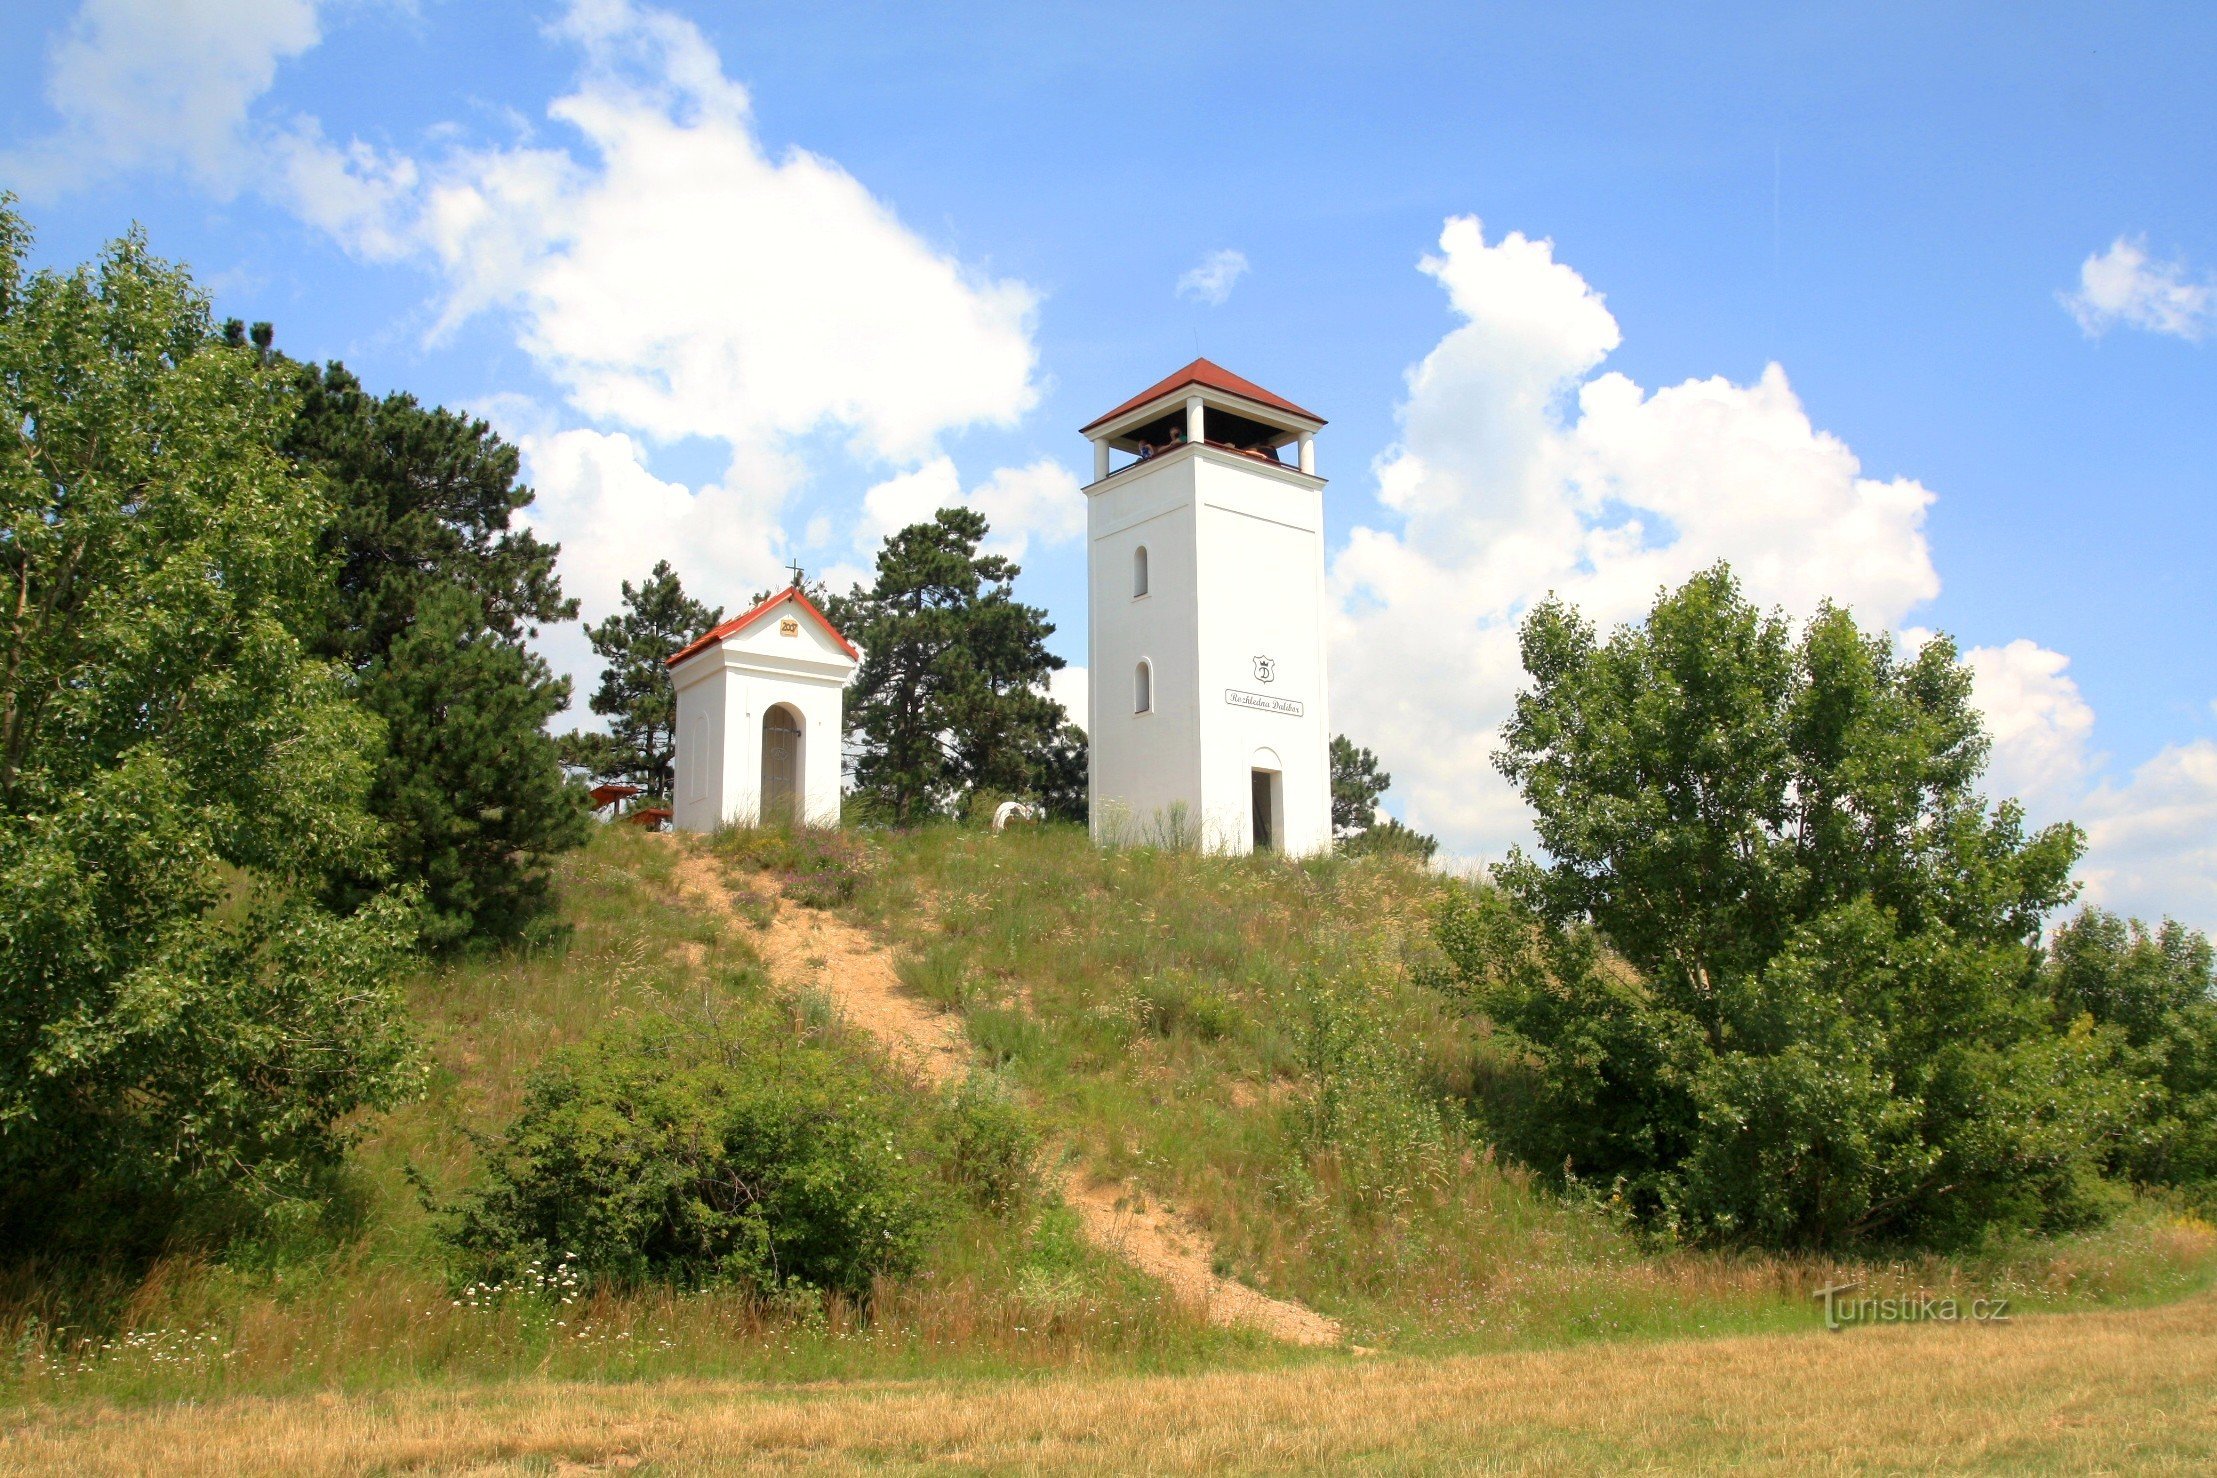 Η κορυφή του Γολγοθά με το παρεκκλήσι του Αγ. Η Urbana και ο πύργος επιφυλακής Dalibor